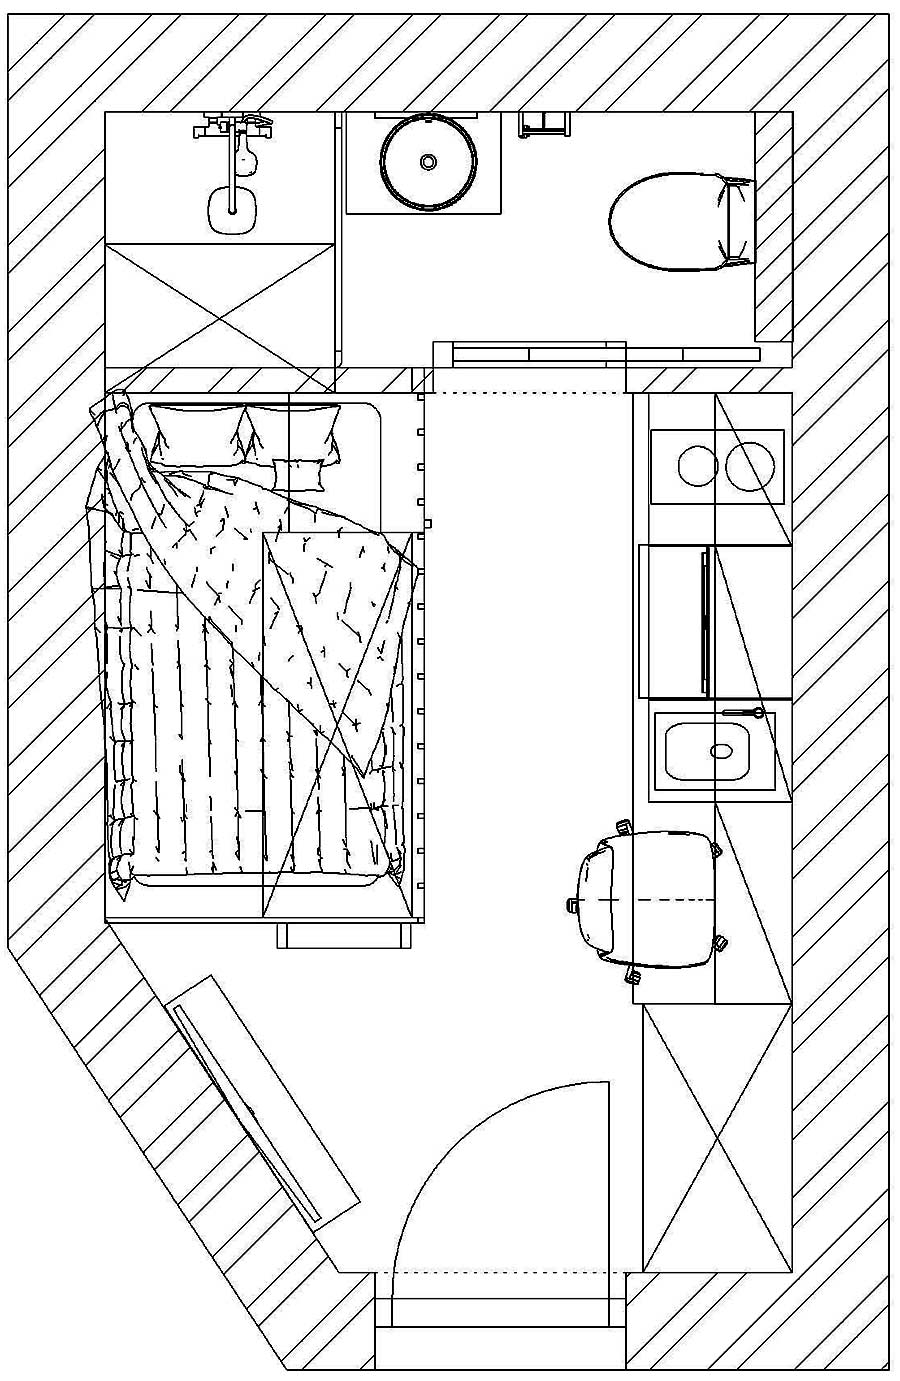 Mặt bằng căn hộ cho thuê được cải tạo từ một phòng bếp có diện tích vỏn vẹn 11m².